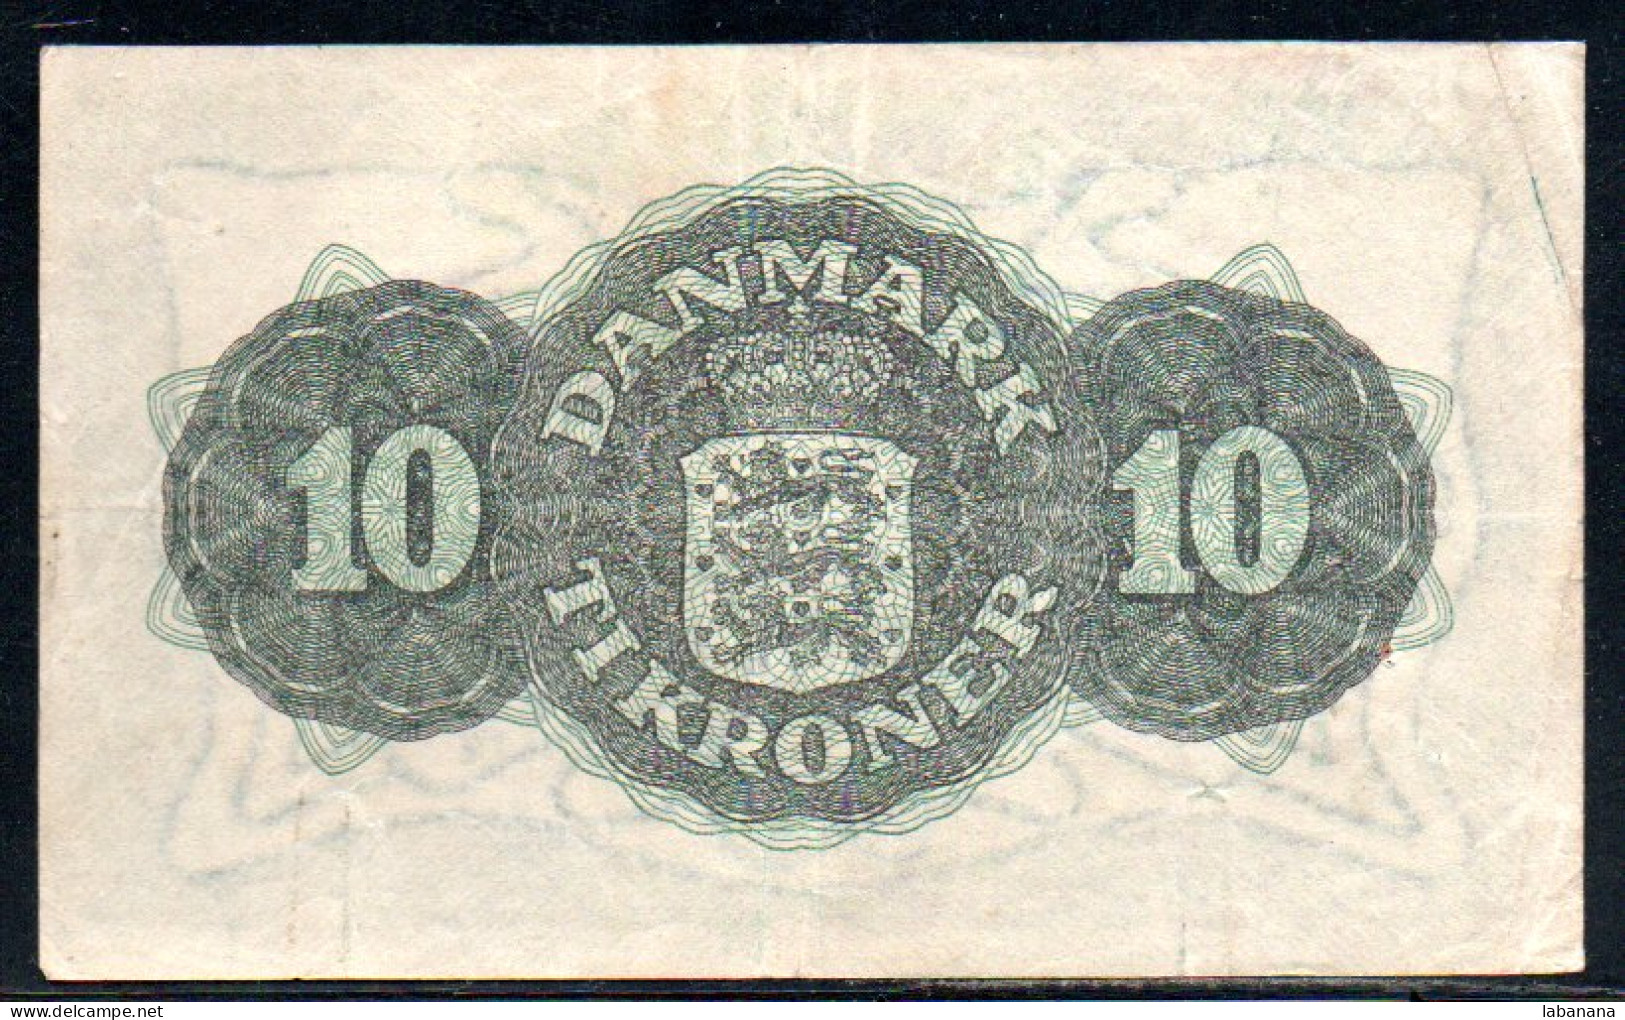 659-Danemark 10 Kroner 1945 B117 - Denmark